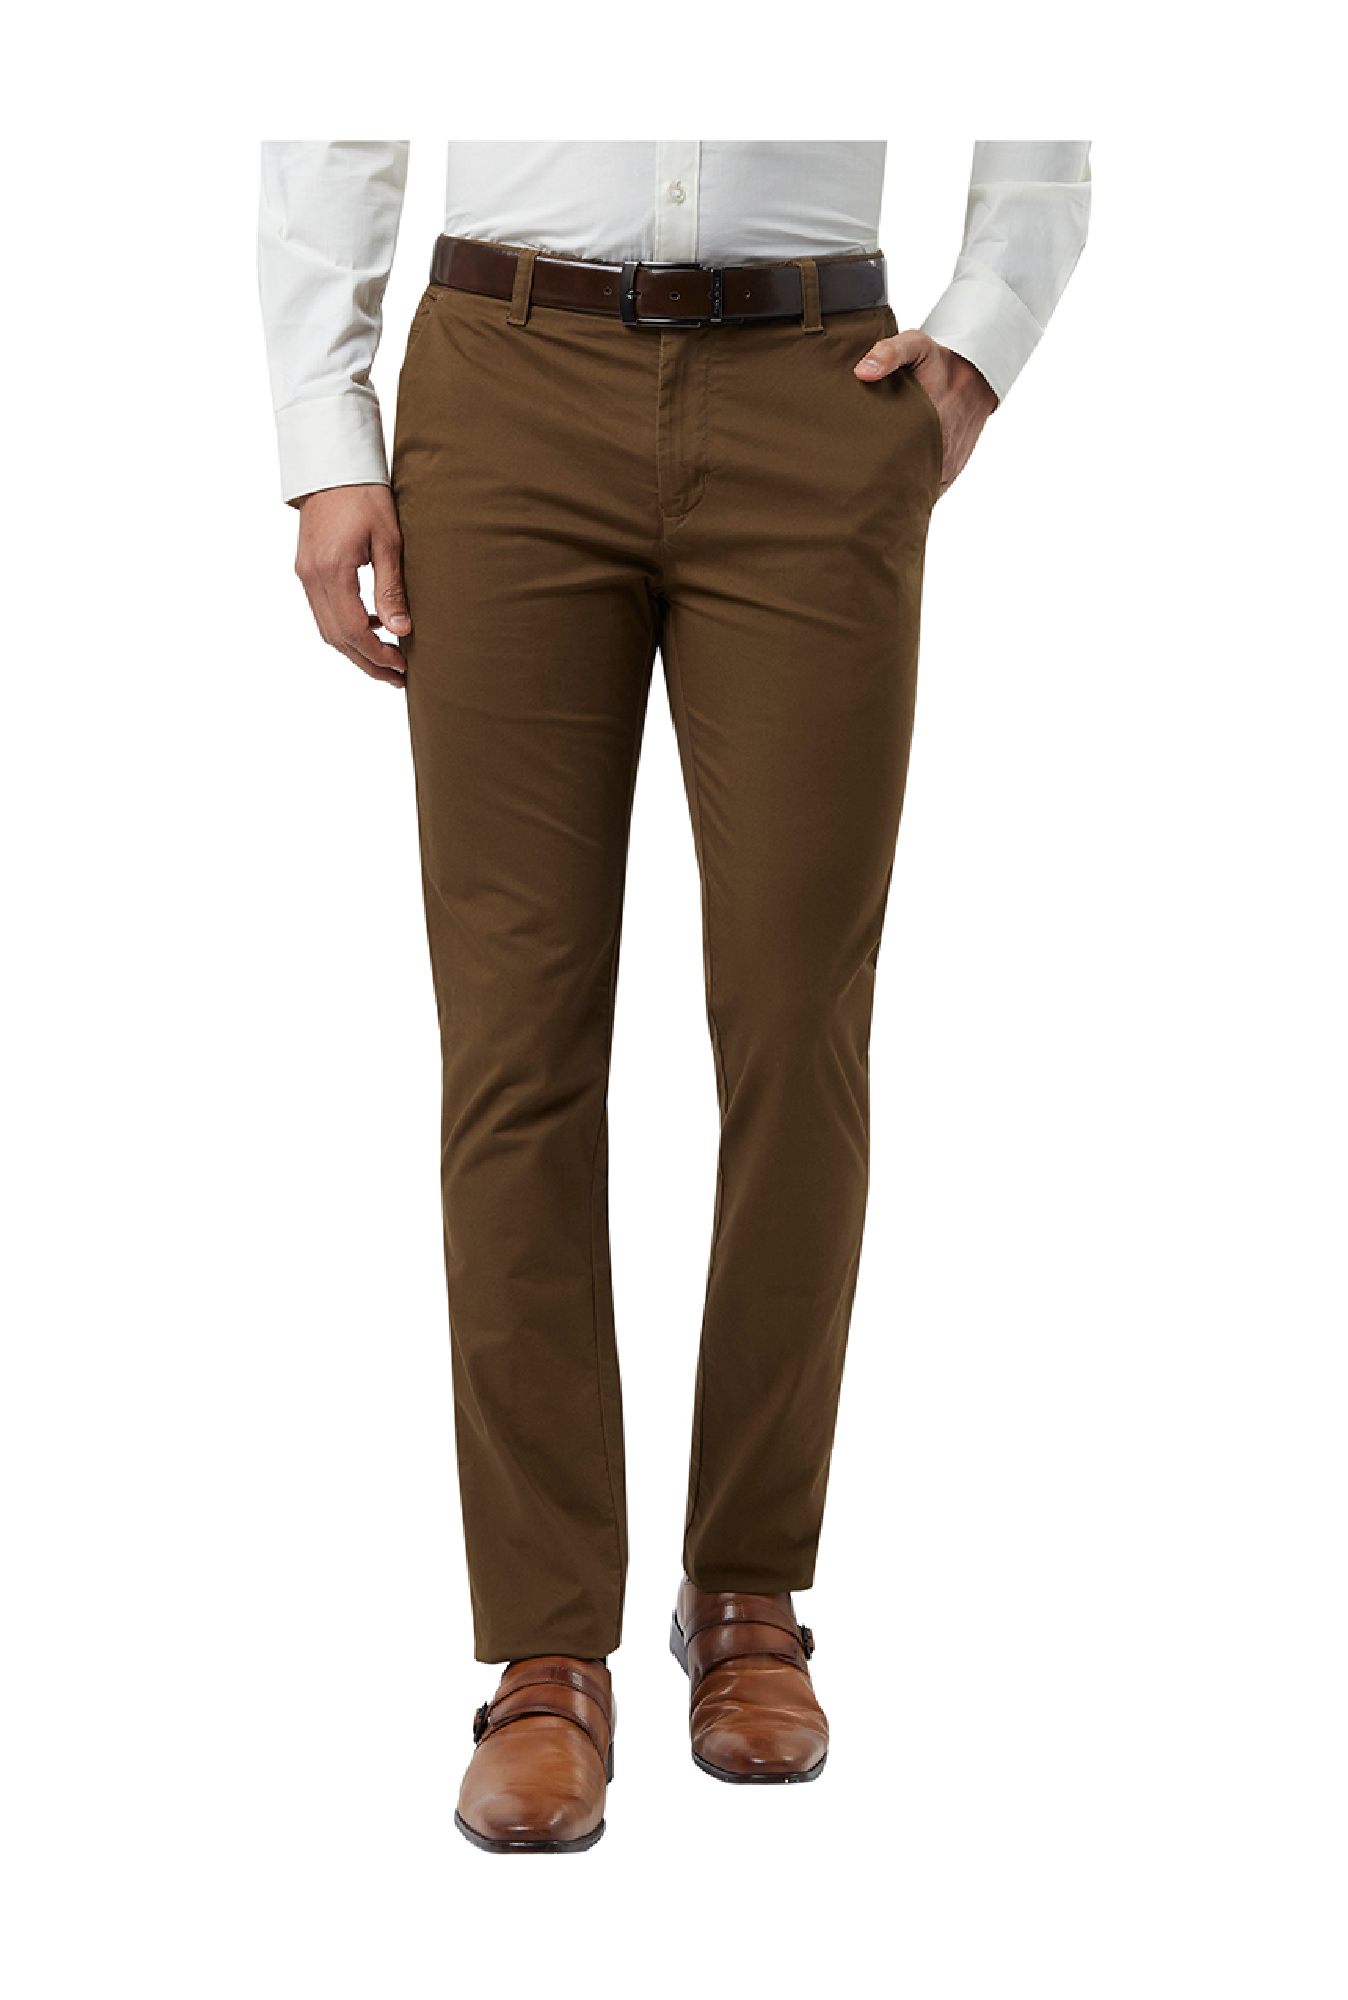 Buy Van Galis Fashion Wear Dark Brown Formal Trouser for Men at Amazon.in